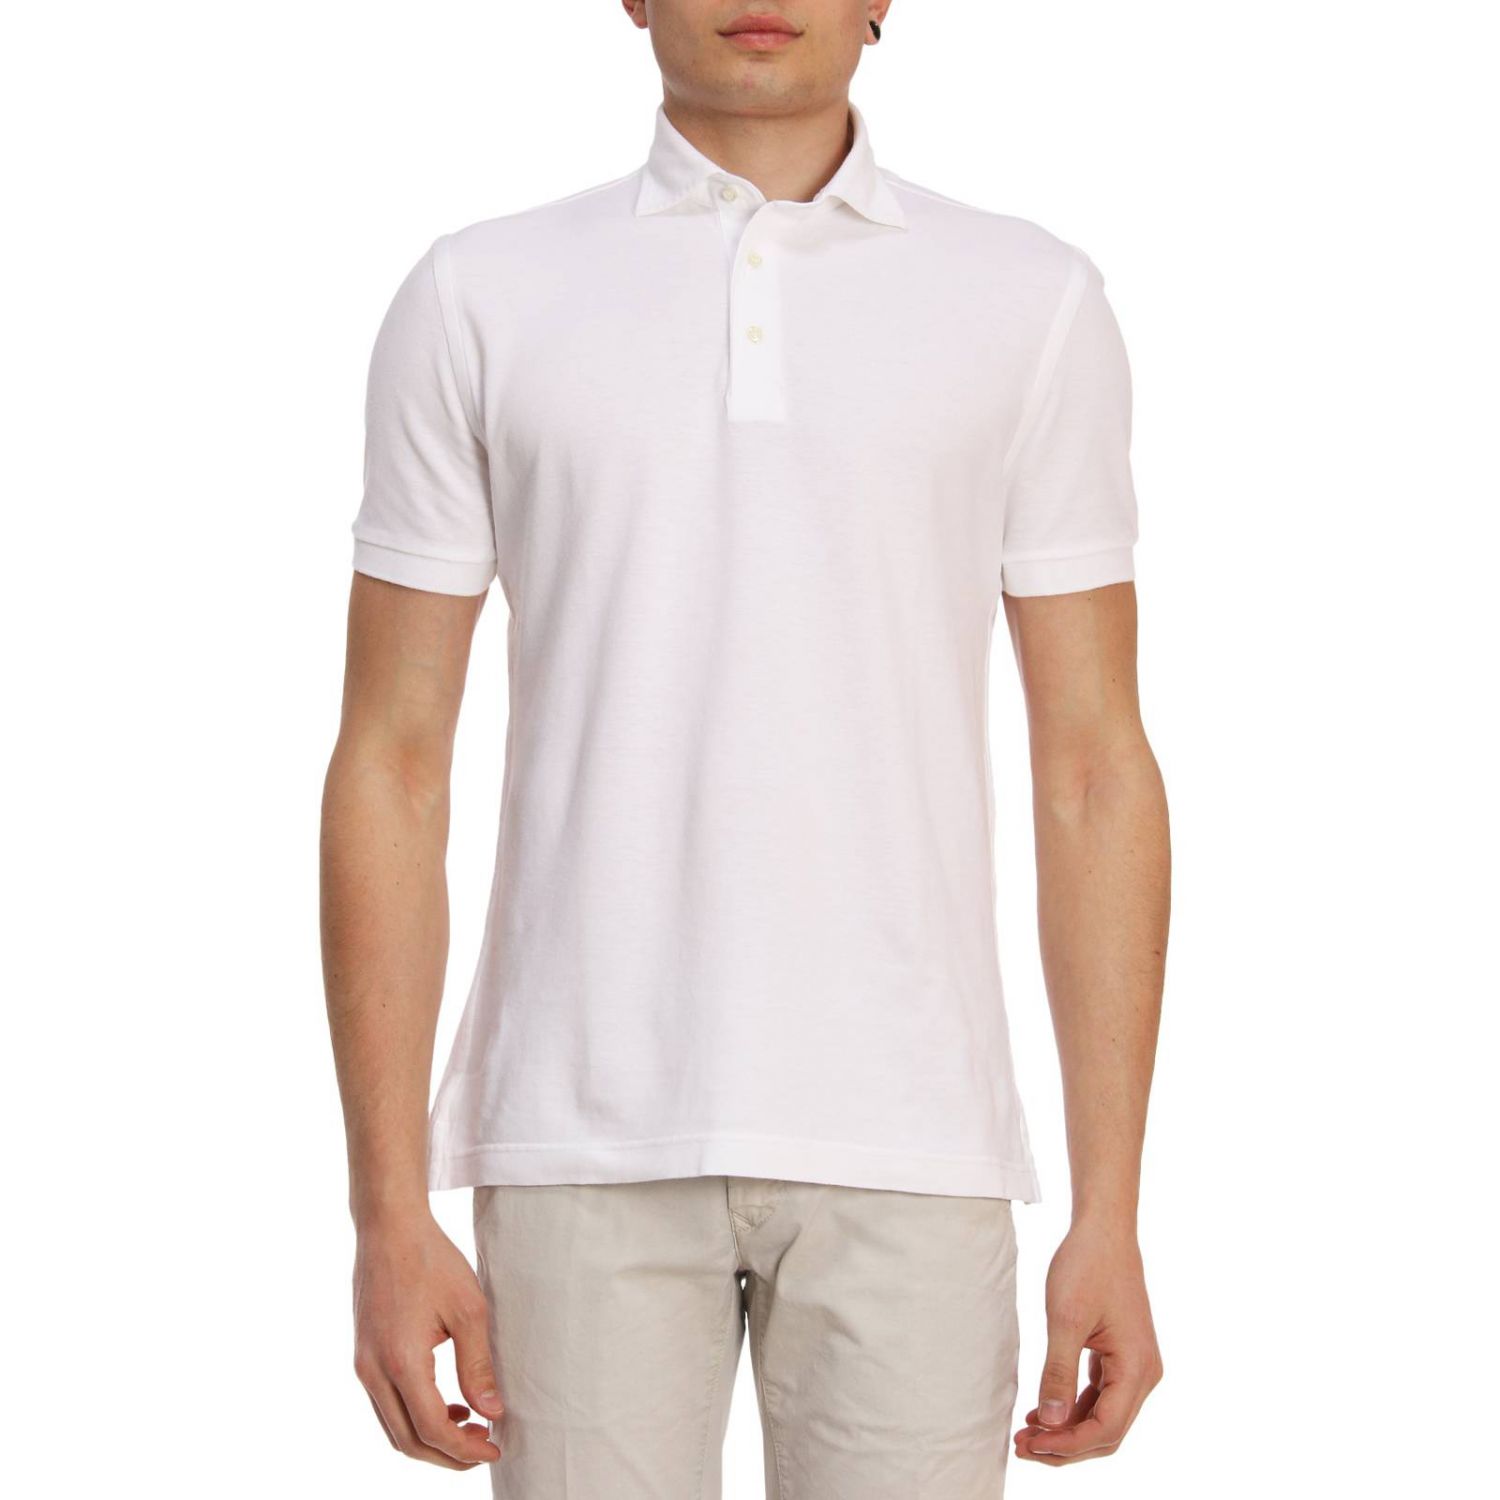 Della Ciana Outlet: Shirt men - White | Shirt Della Ciana 43201 GIGLIO.COM